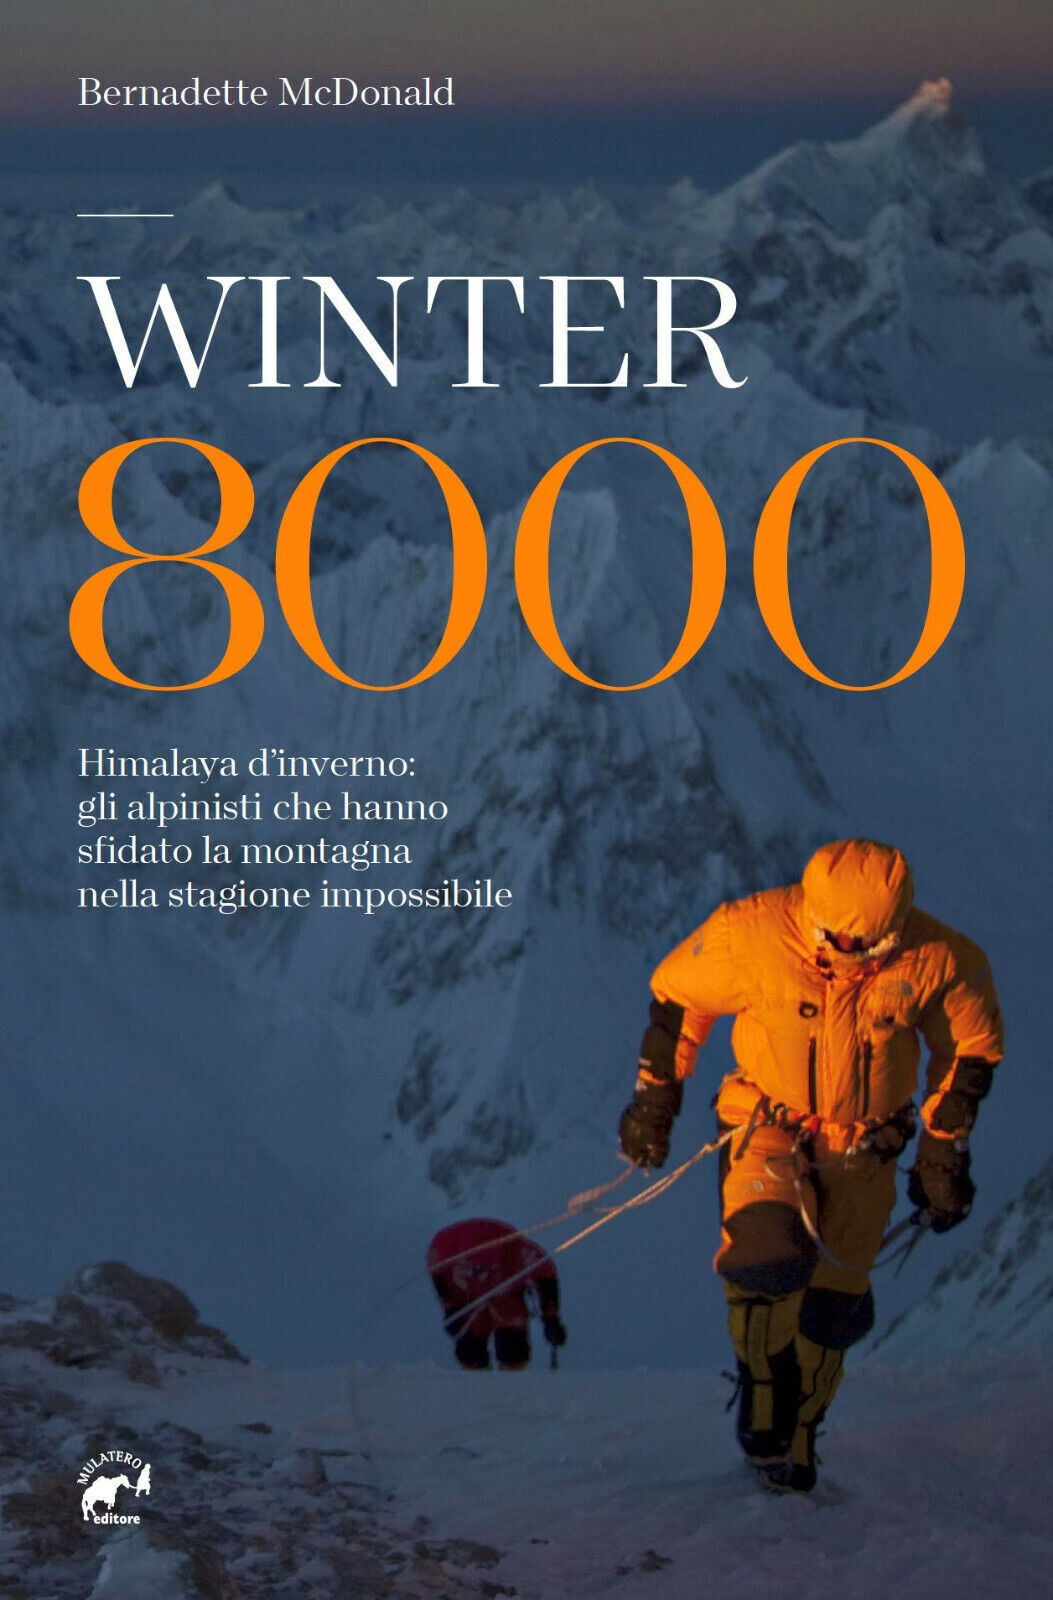 Winter 8000 - Bernadette McDonald - Mulatero, 2020